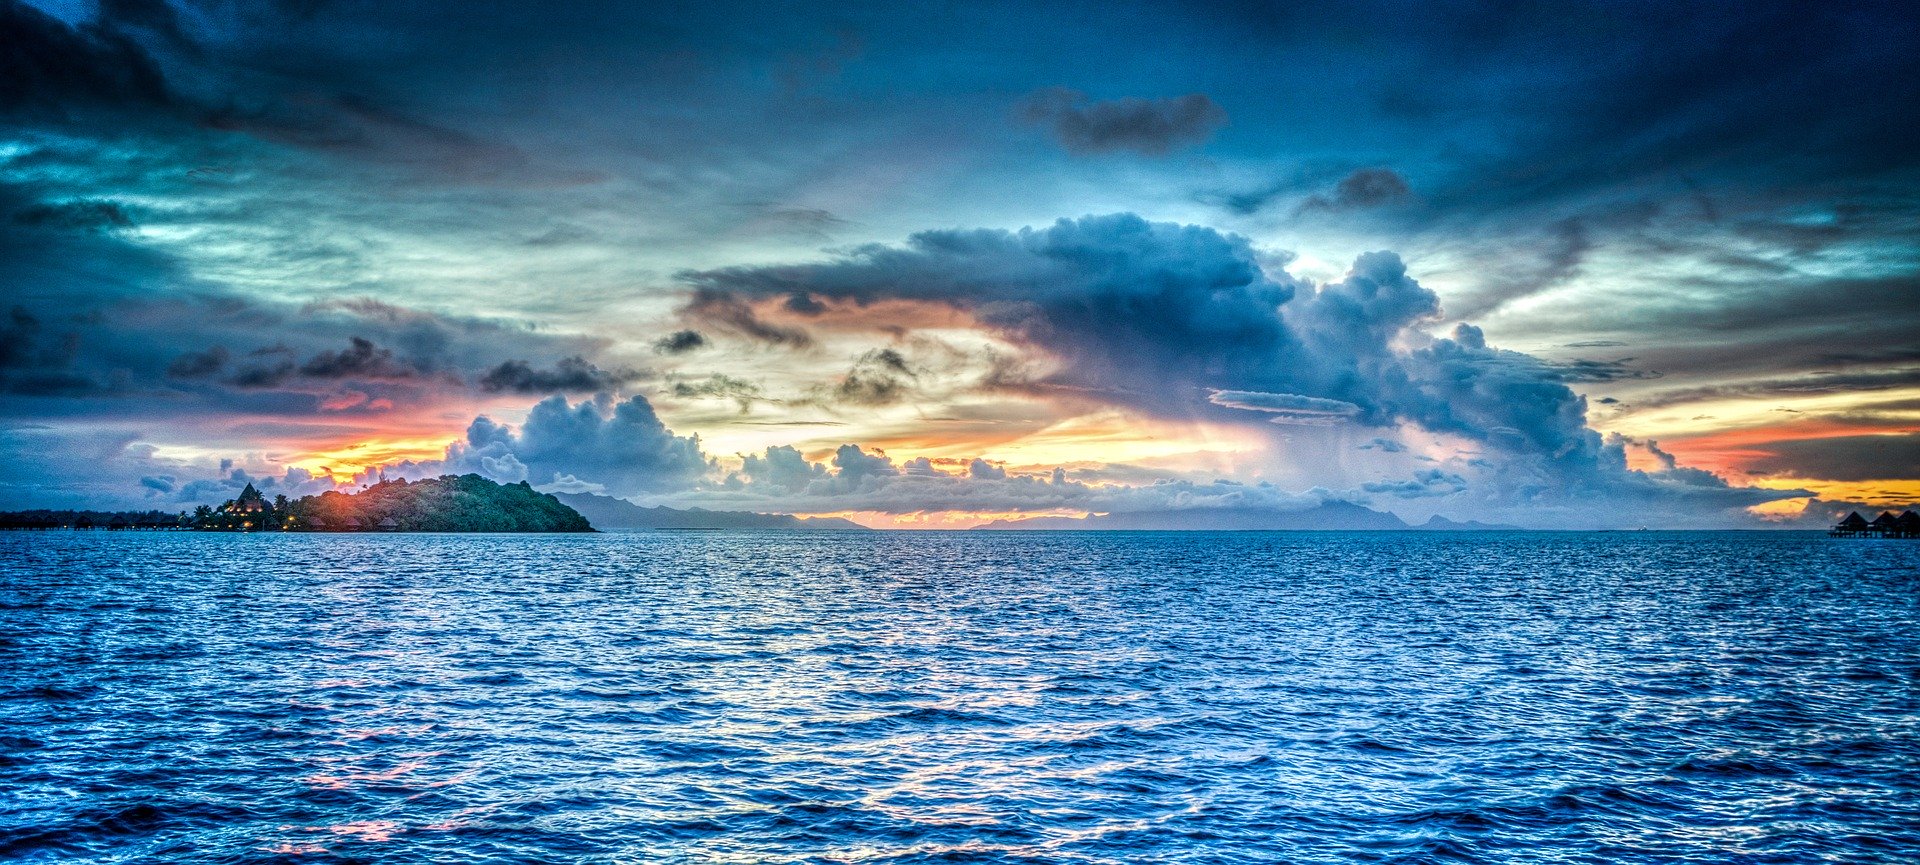 Le acque di Bora Bora in Polinesia Francese, luogo imperdibile con l'assicurazione viaggio Oceania di Amerigo.it